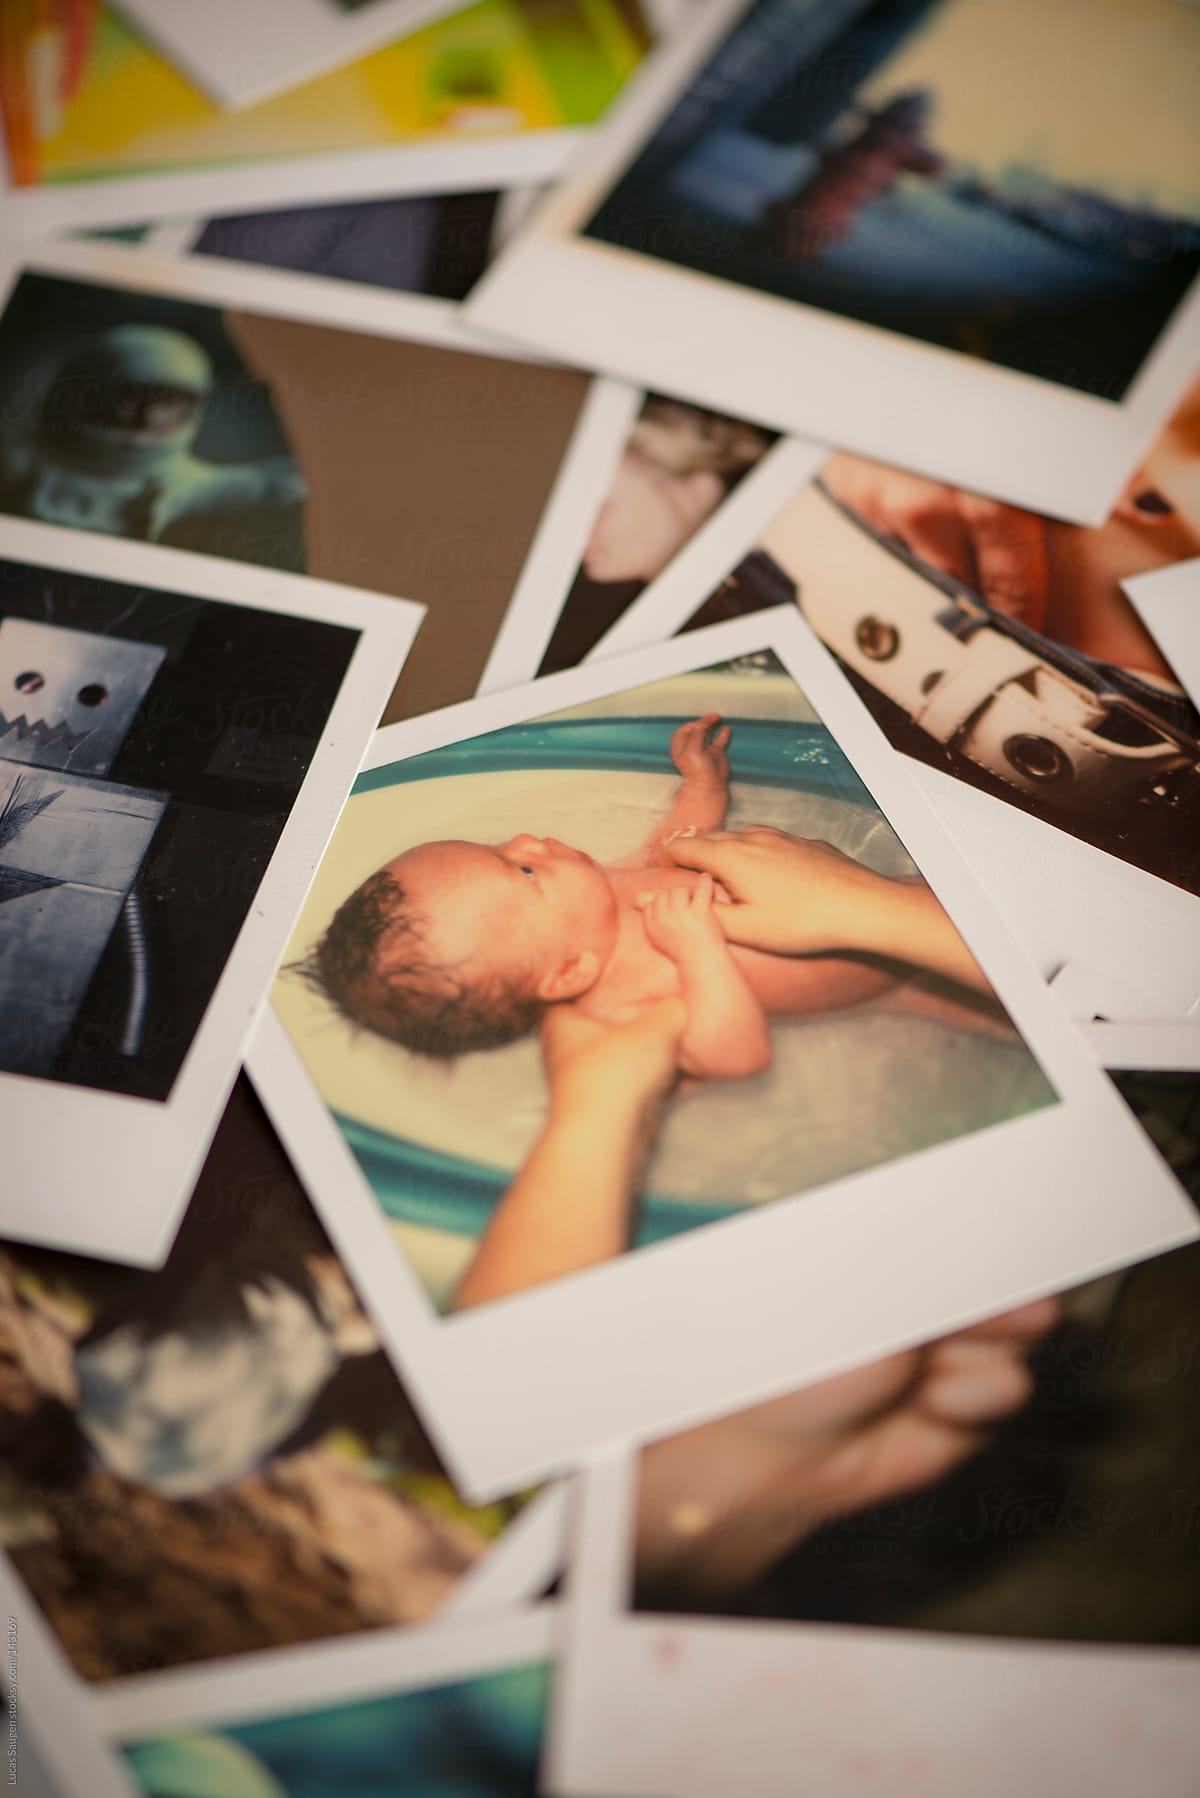 Polaroid of a newborn baby boy taking a bath.